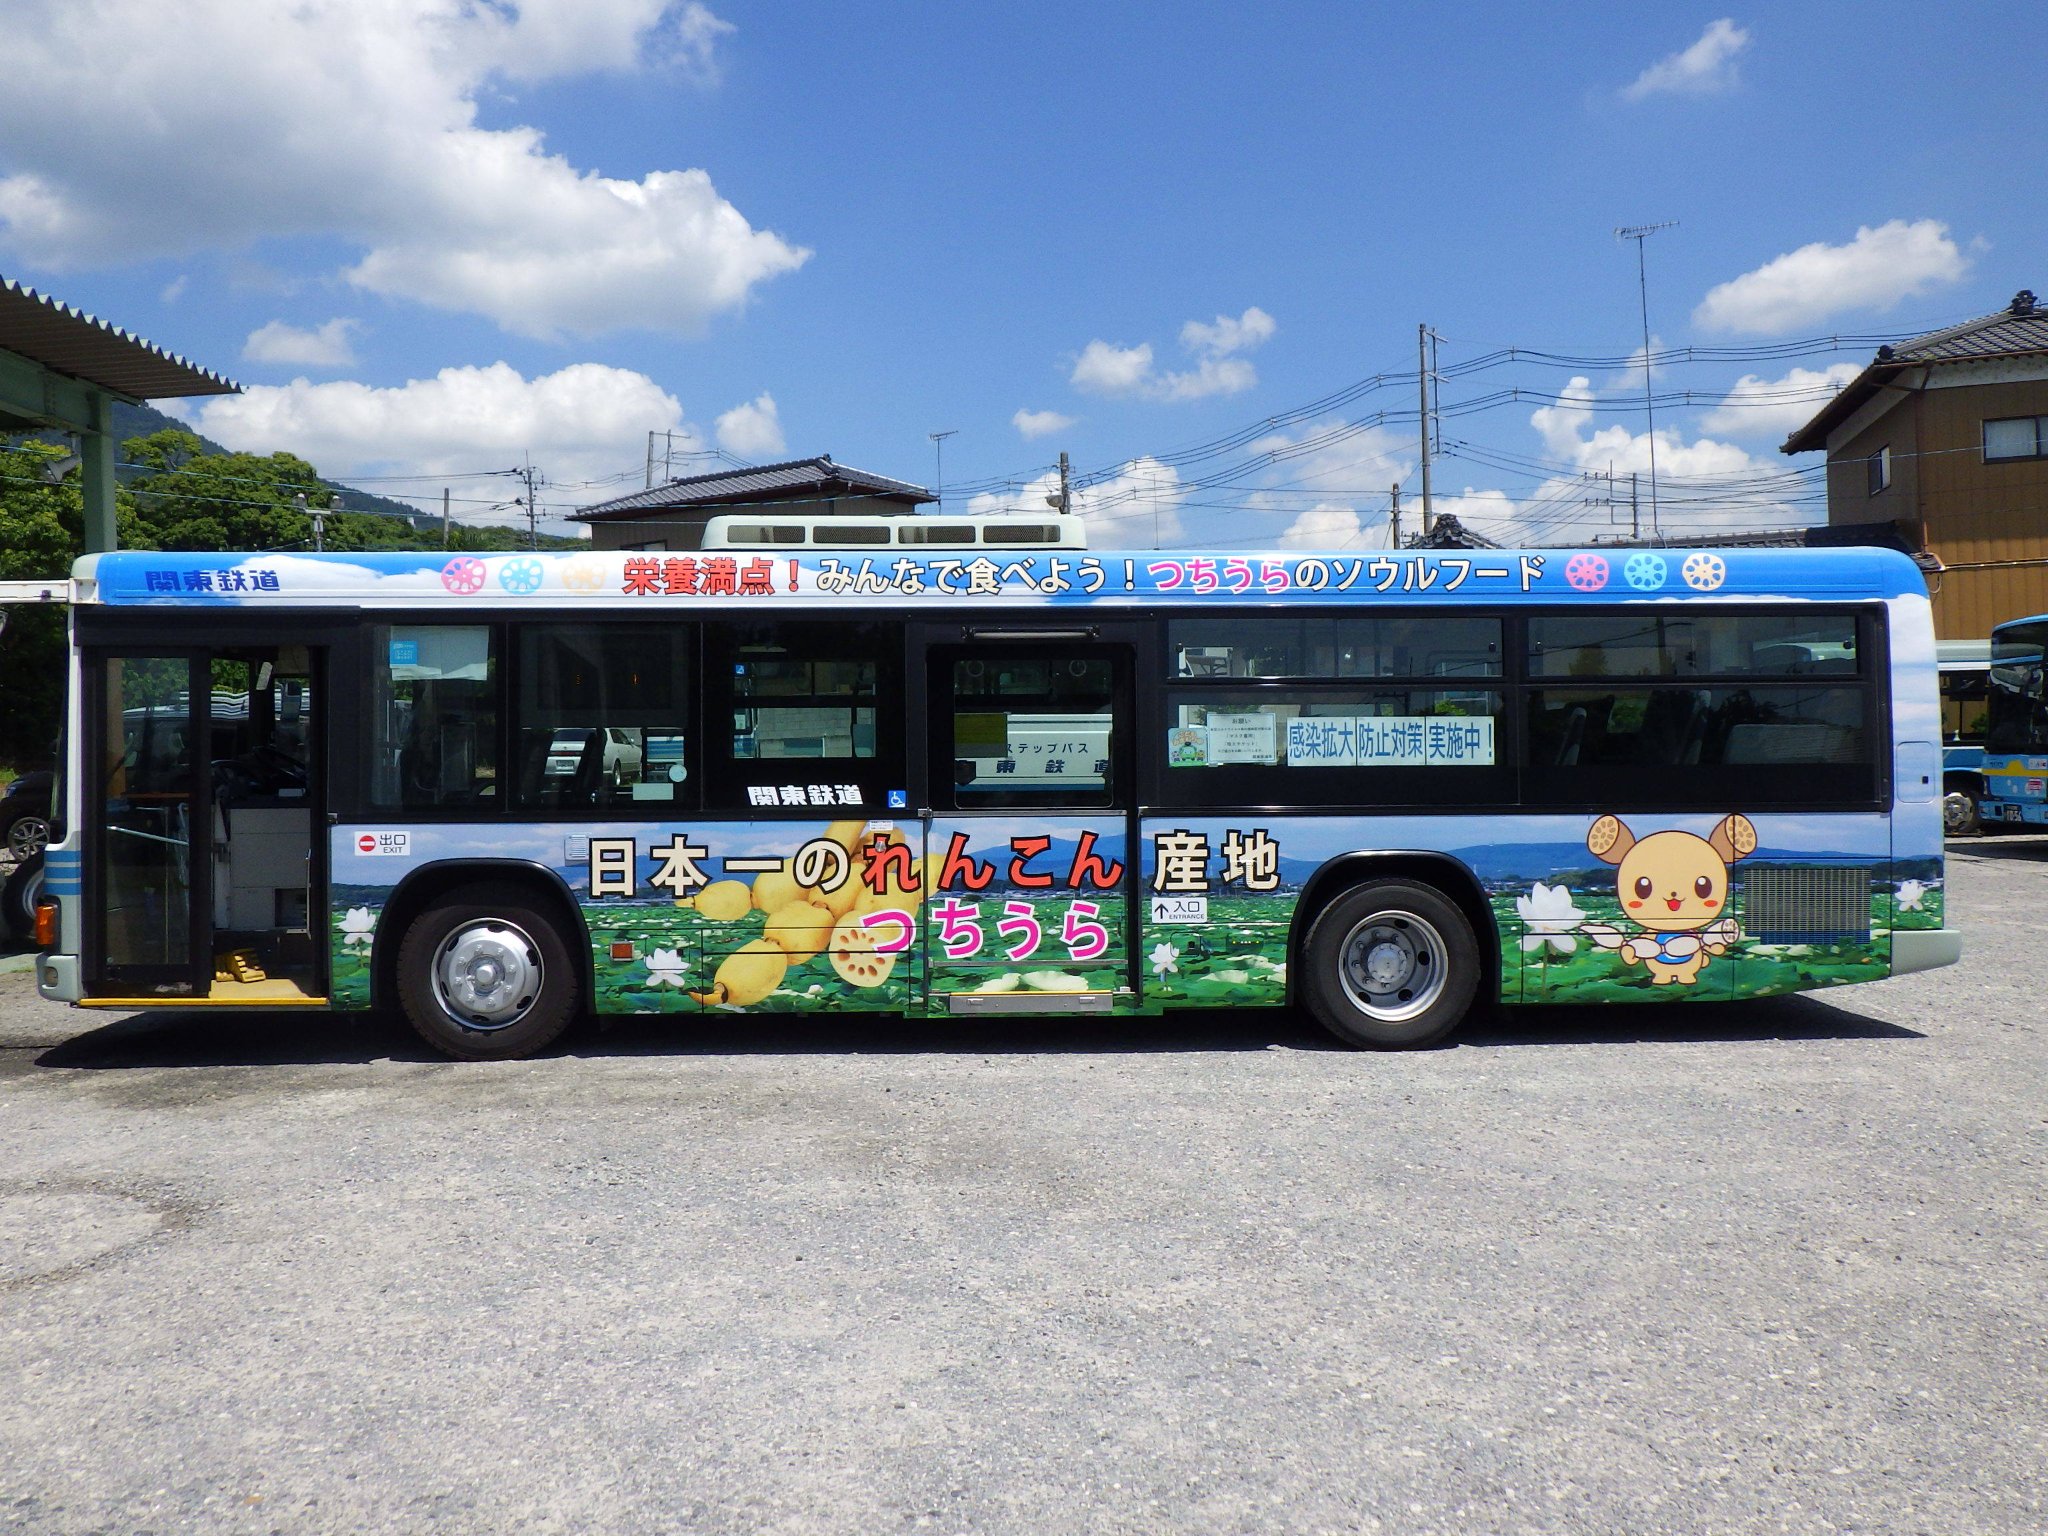 ラッピングバス走行中!日本一のれんこん産地つちうらpage-visual ラッピングバス走行中!日本一のれんこん産地つちうらビジュアル